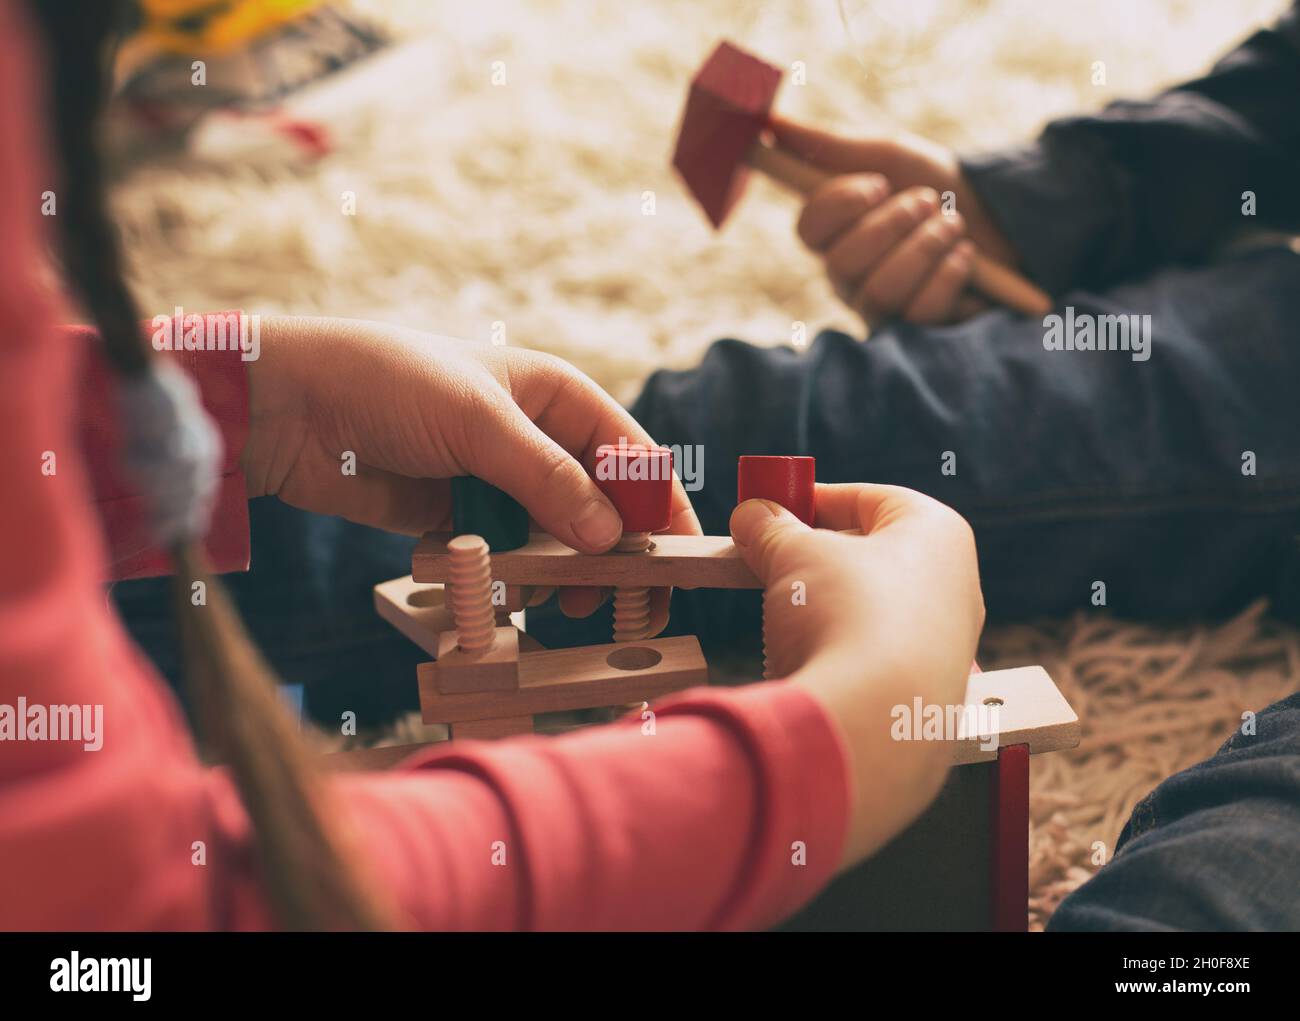 Niño y niña jugando con juguetes de madera en la alfombra. Primer plano de las manos que practican habilidades motoras con herramientas de trabajo Foto de stock